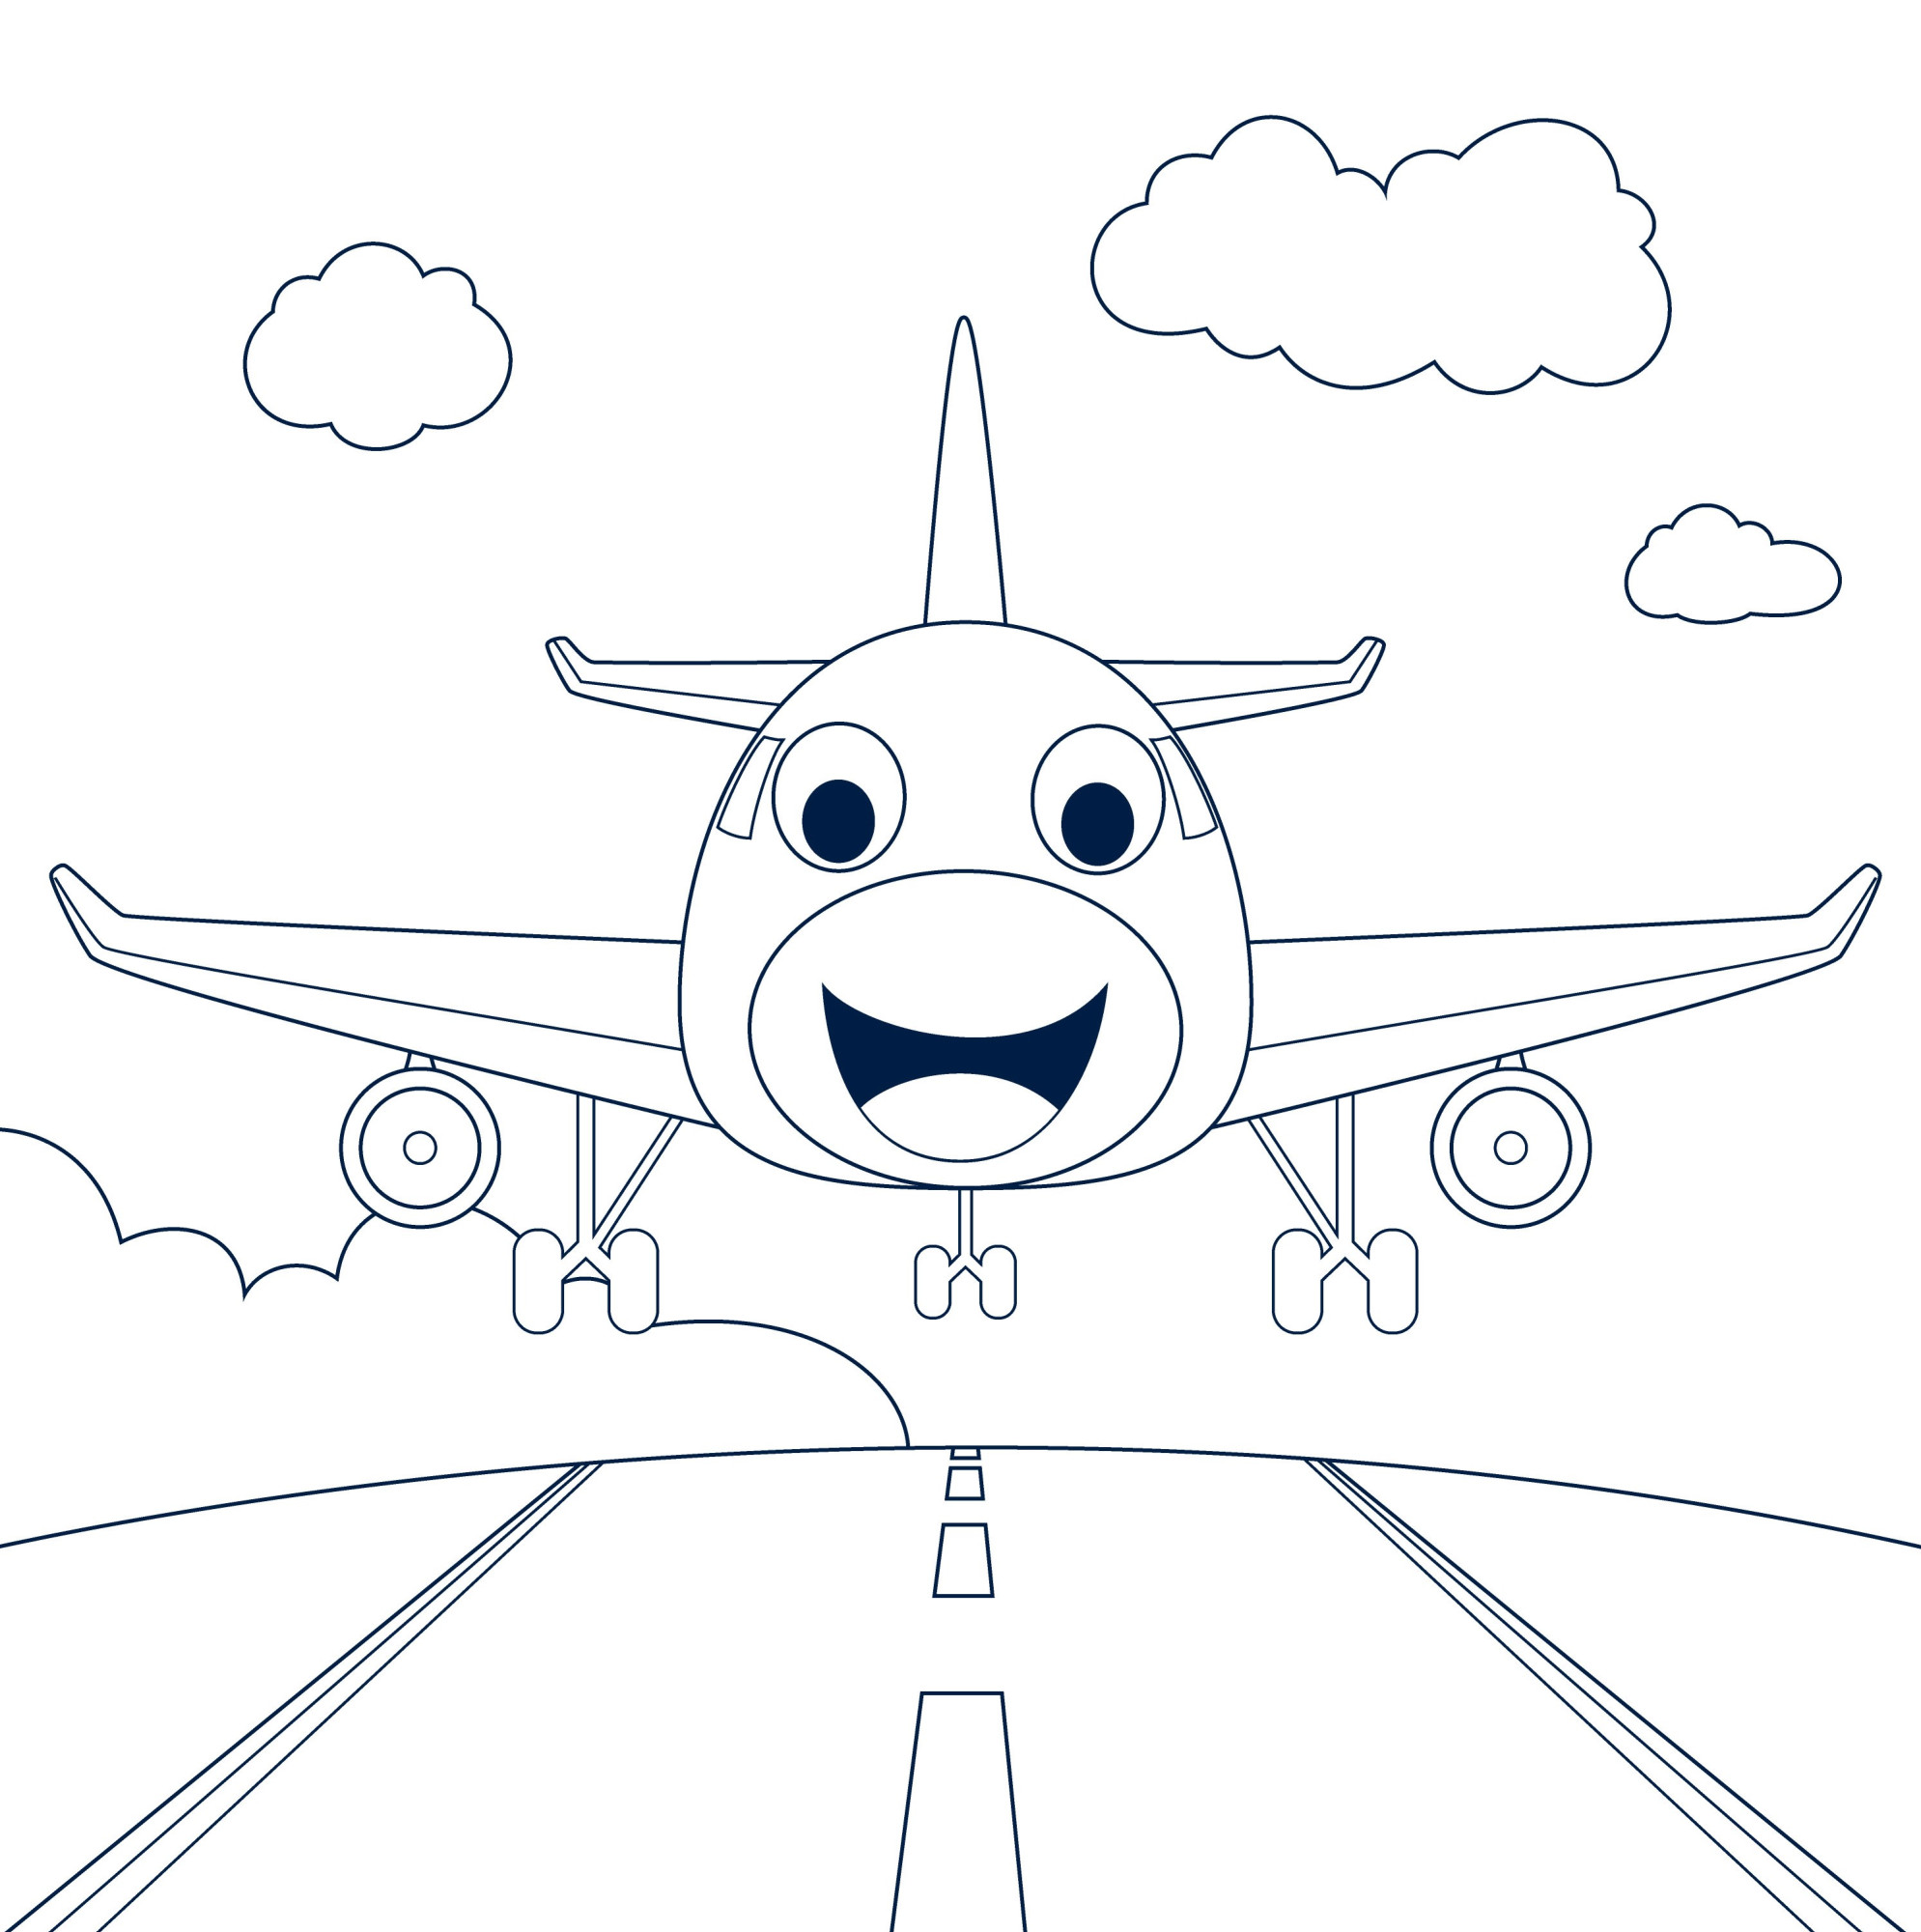 Раскраска для детей: самолет с лицом на взлетной полосе